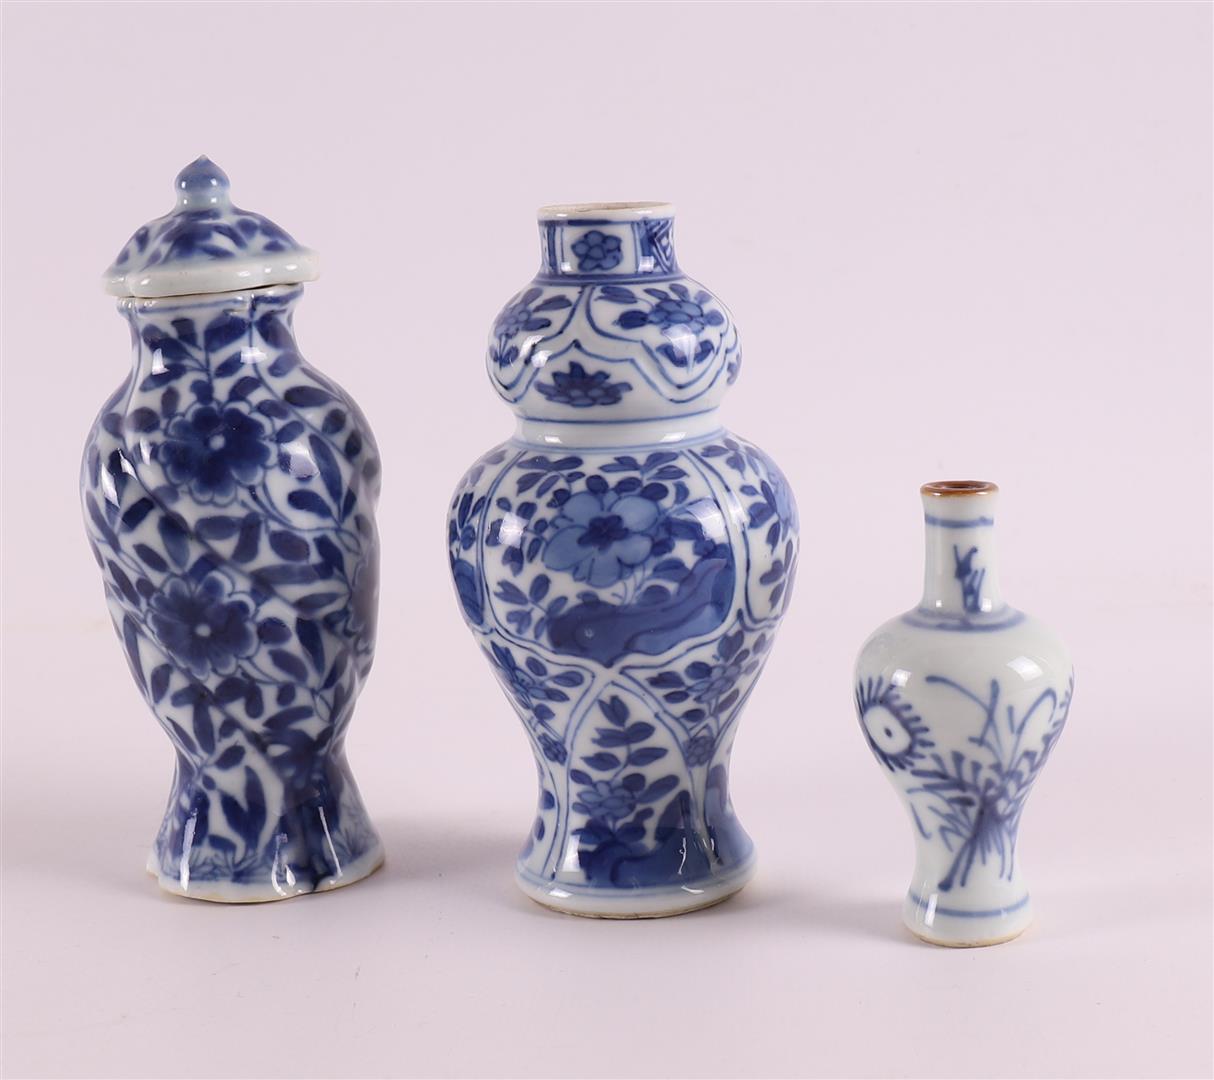 Three various blue/white porcelain vases, China, including Kangxi, around 1700. Blue underglaze